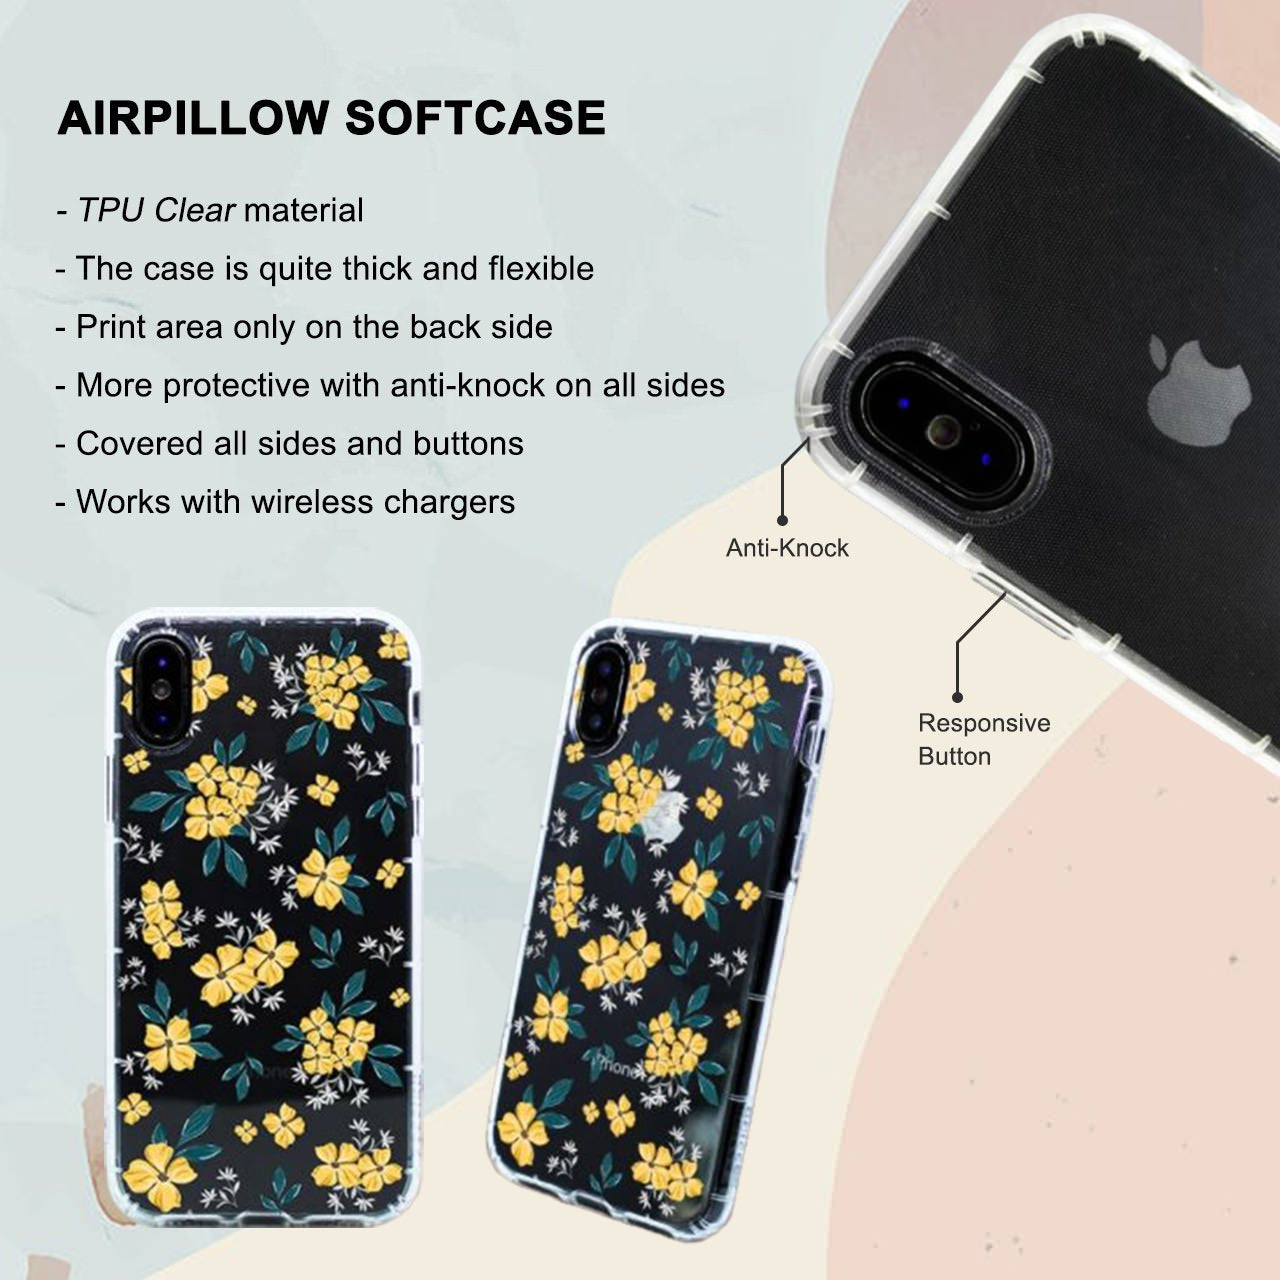 Admiral Akainu iPhone 6 / 6s Plus Case